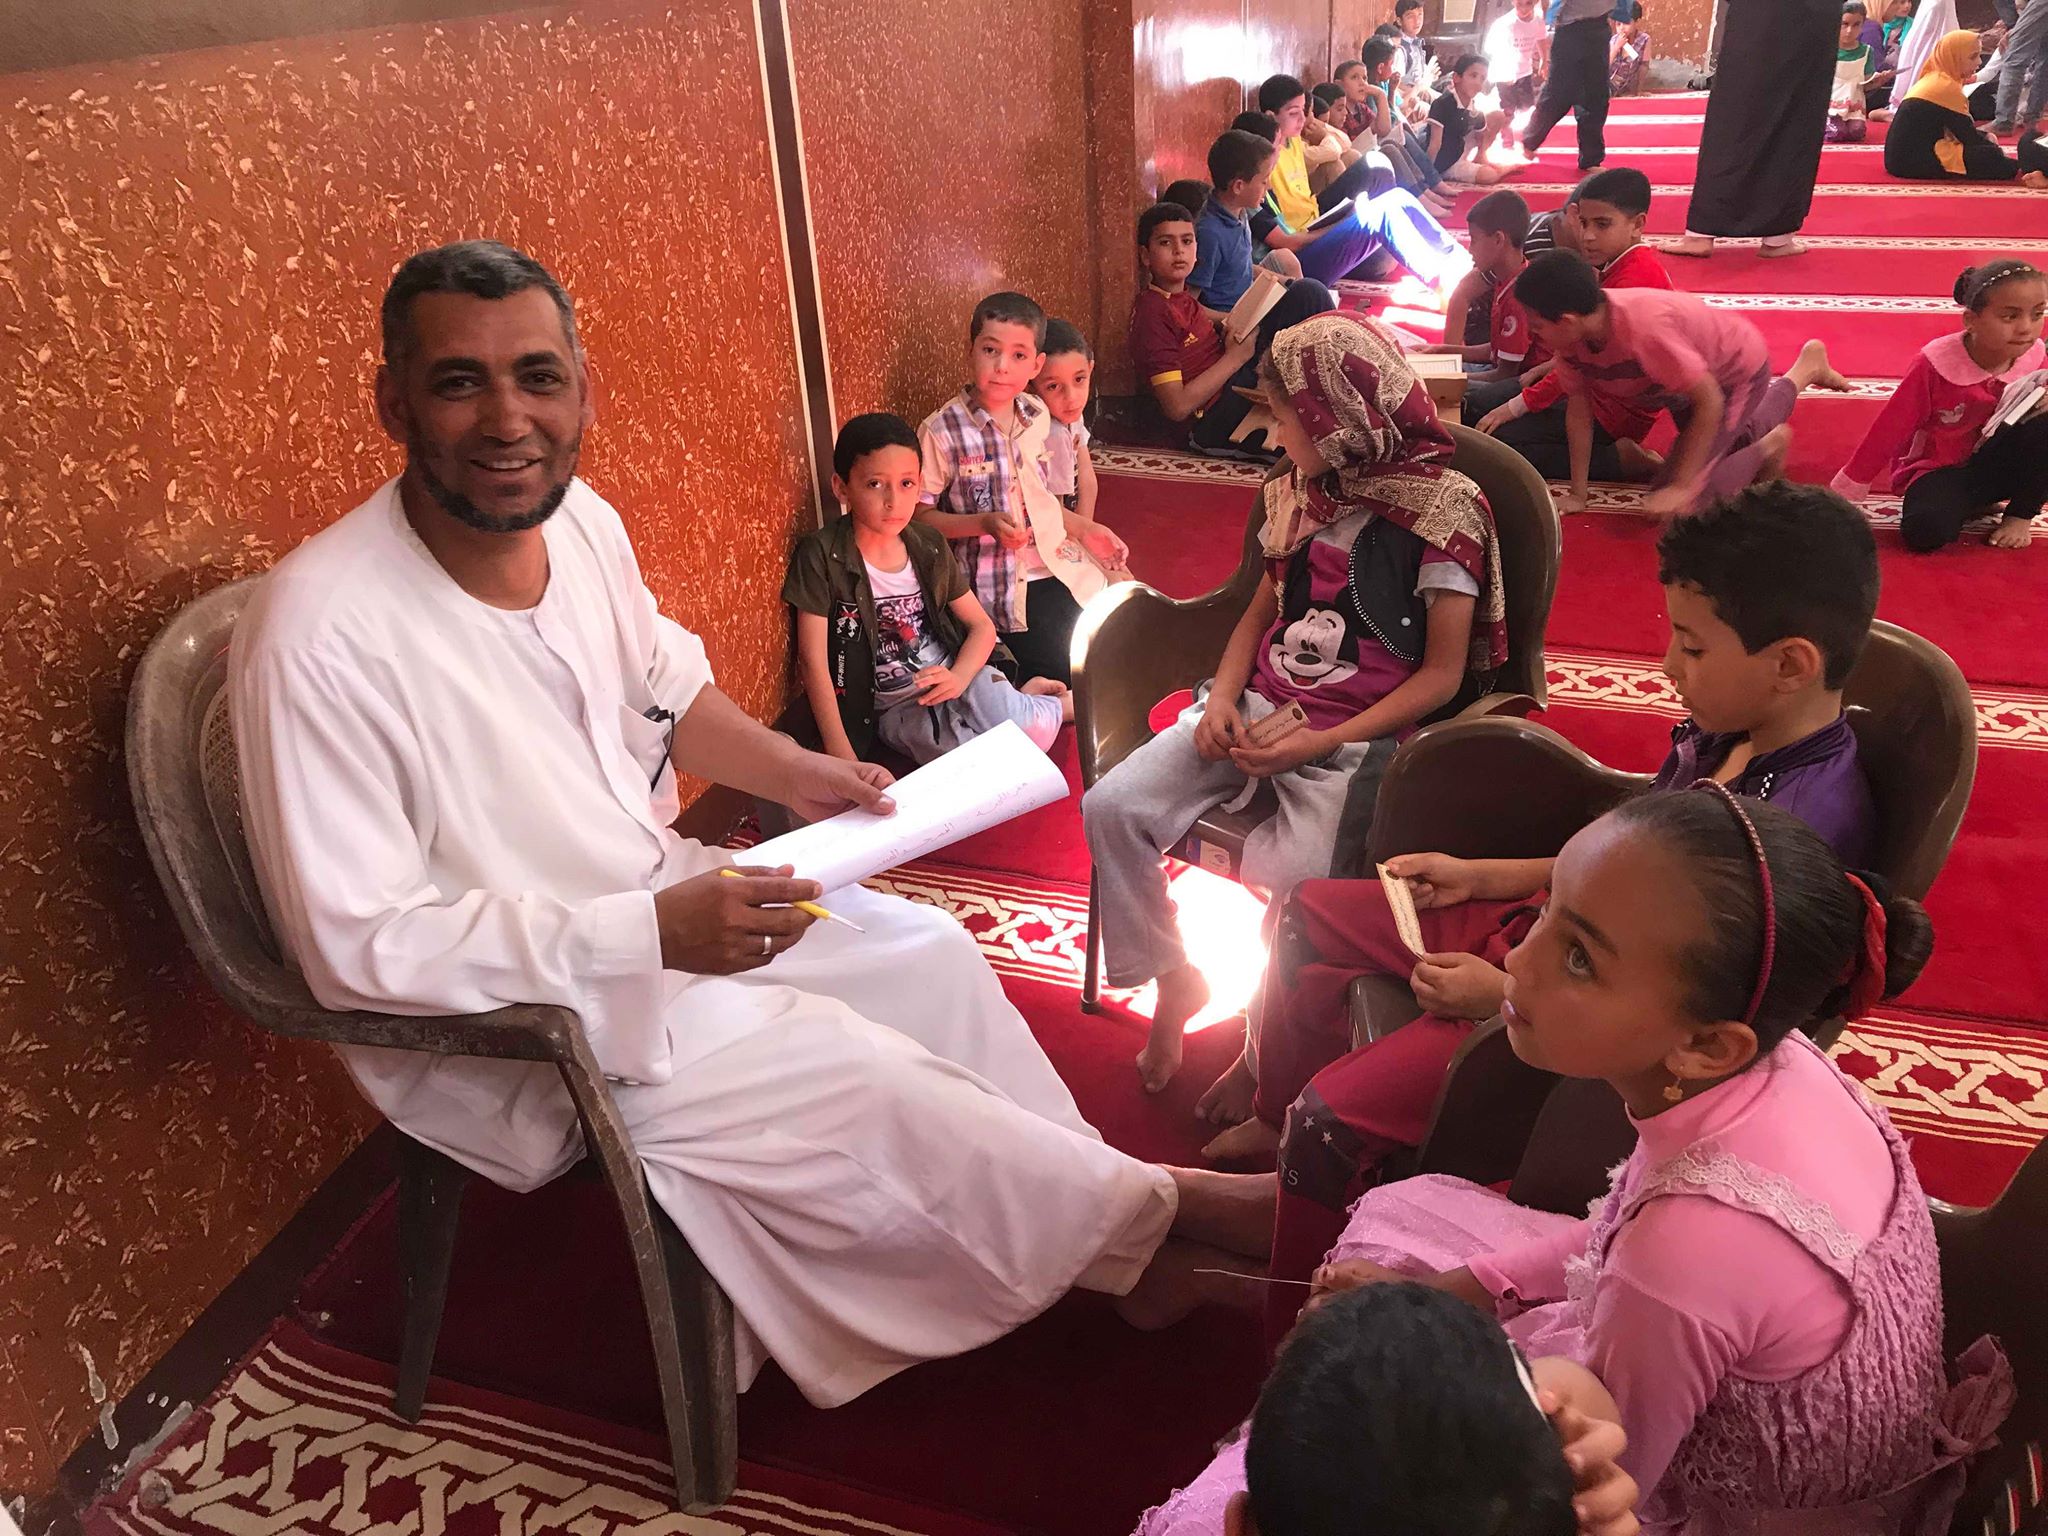  بالصور : انطلاق فعاليات المسابقة الكبرى للقرأن الكريم  بقرية روينه 